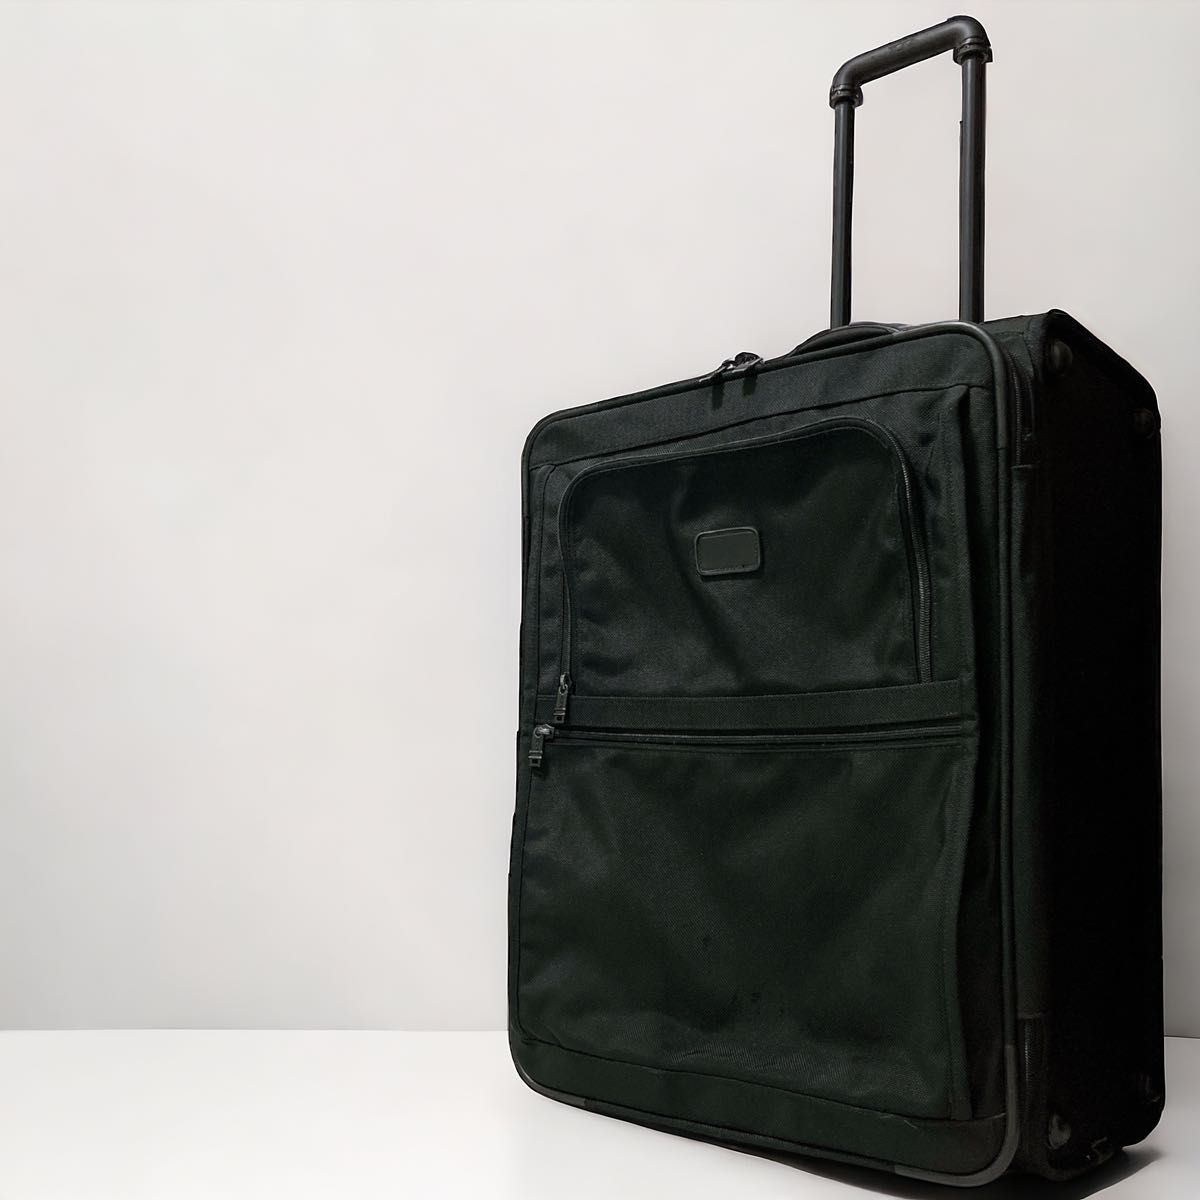 TUMI トゥミ スーツケース キャリーバッグ ガーメント 大きい 容量 2輪　2244D3 バリスティックナイロン 黒　 旅行鞄